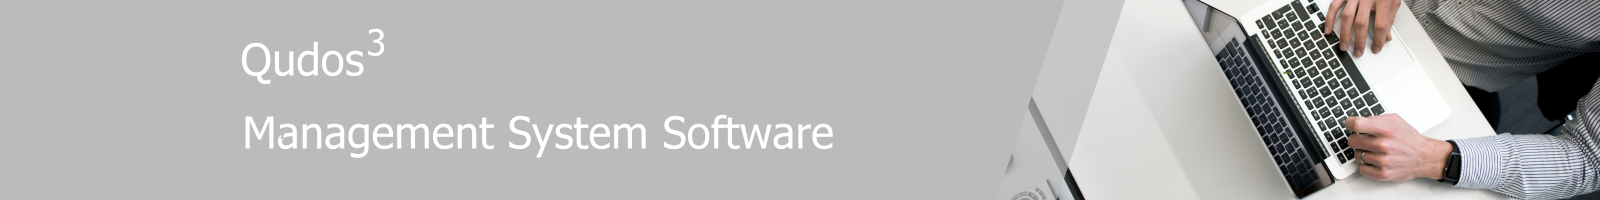 Qudos 3 IMS software banner